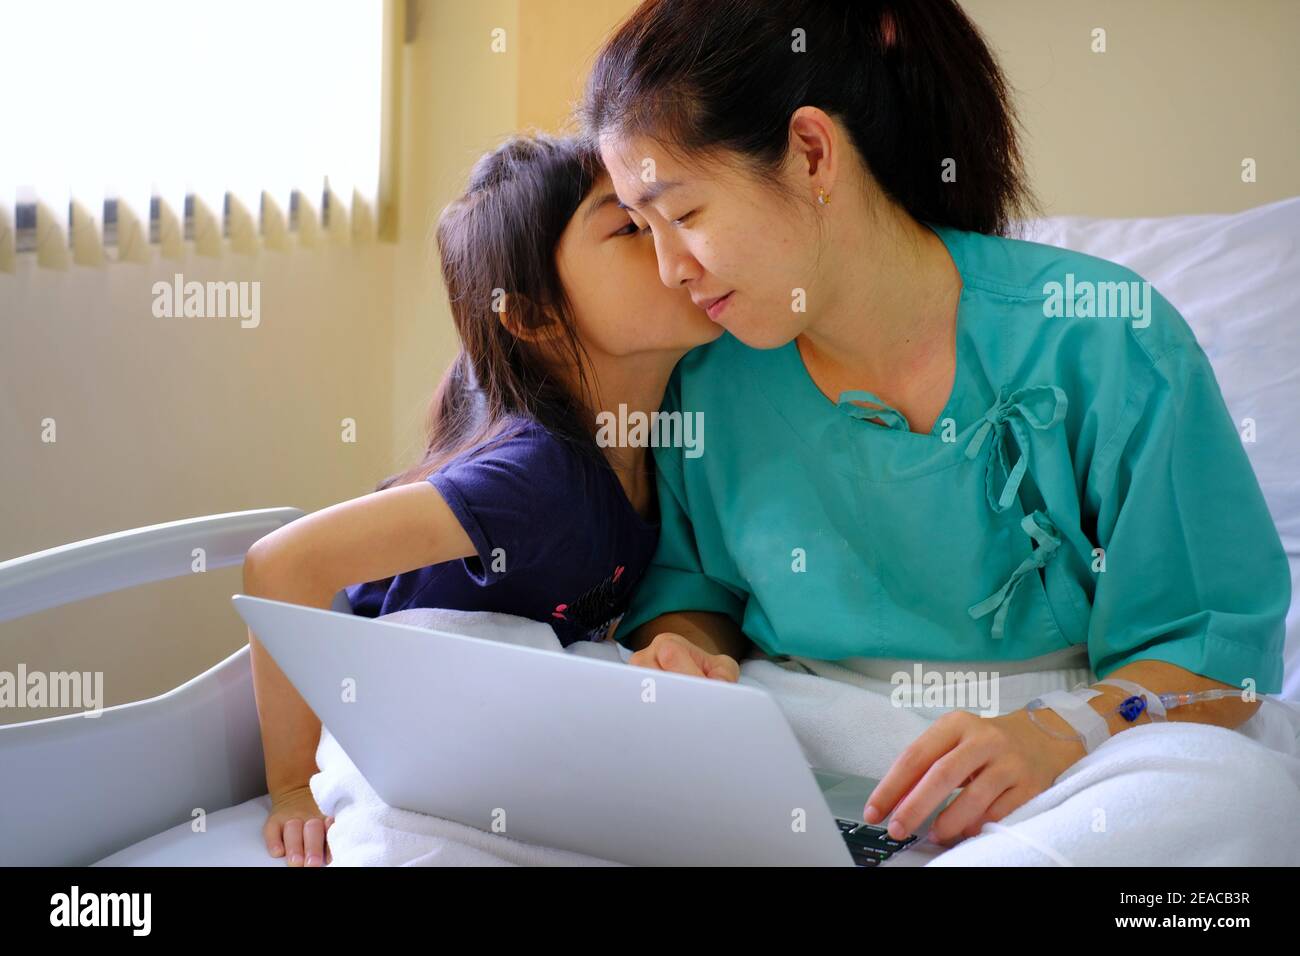 Un demi-coup de corps d'une femme d'affaires de travail assise dans un lit d'hôpital avec injection IV dans son bras, se rétablissant de la chirurgie tout en utilisant un ordinateur portable t Banque D'Images